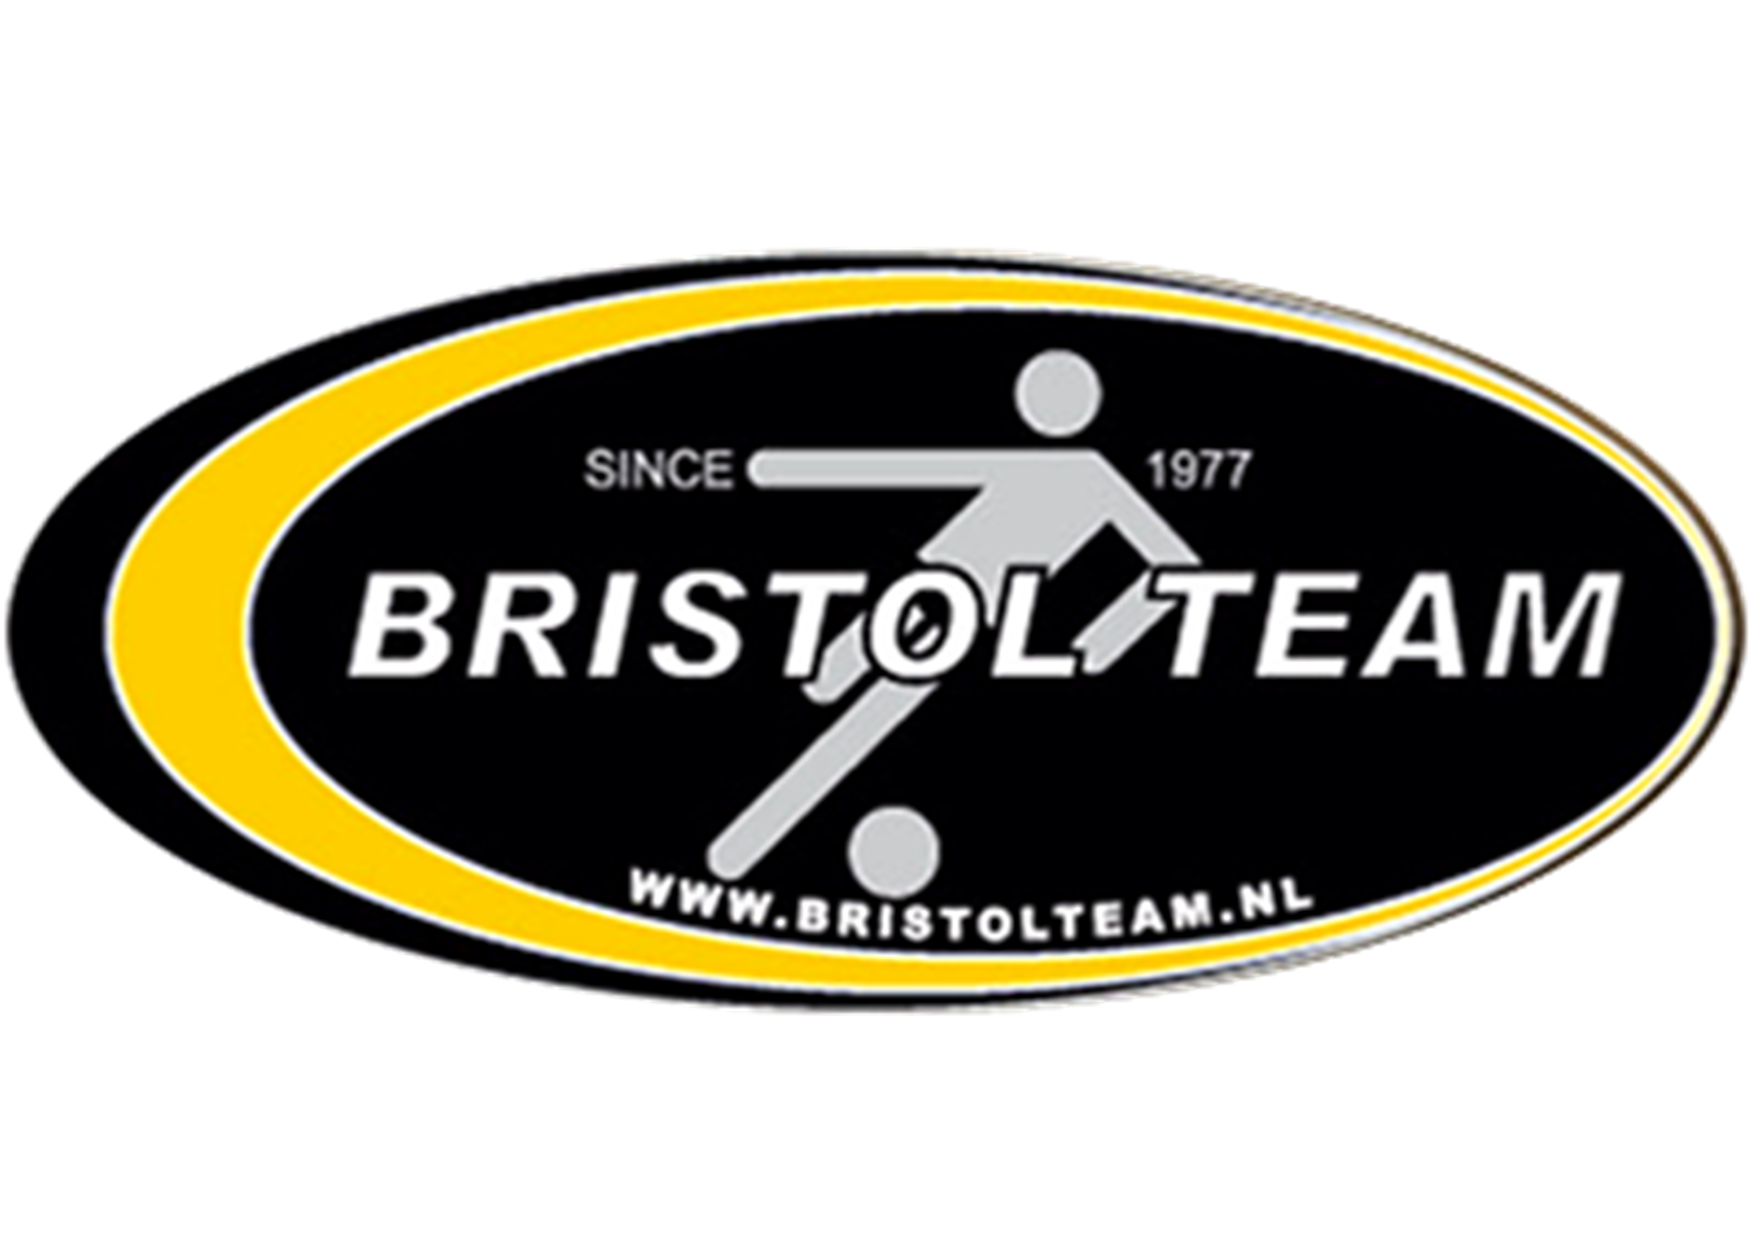 Bristol Team/Logischtiek verliest in een spektakelstuk van ZVV Kroeven/Laboral Services